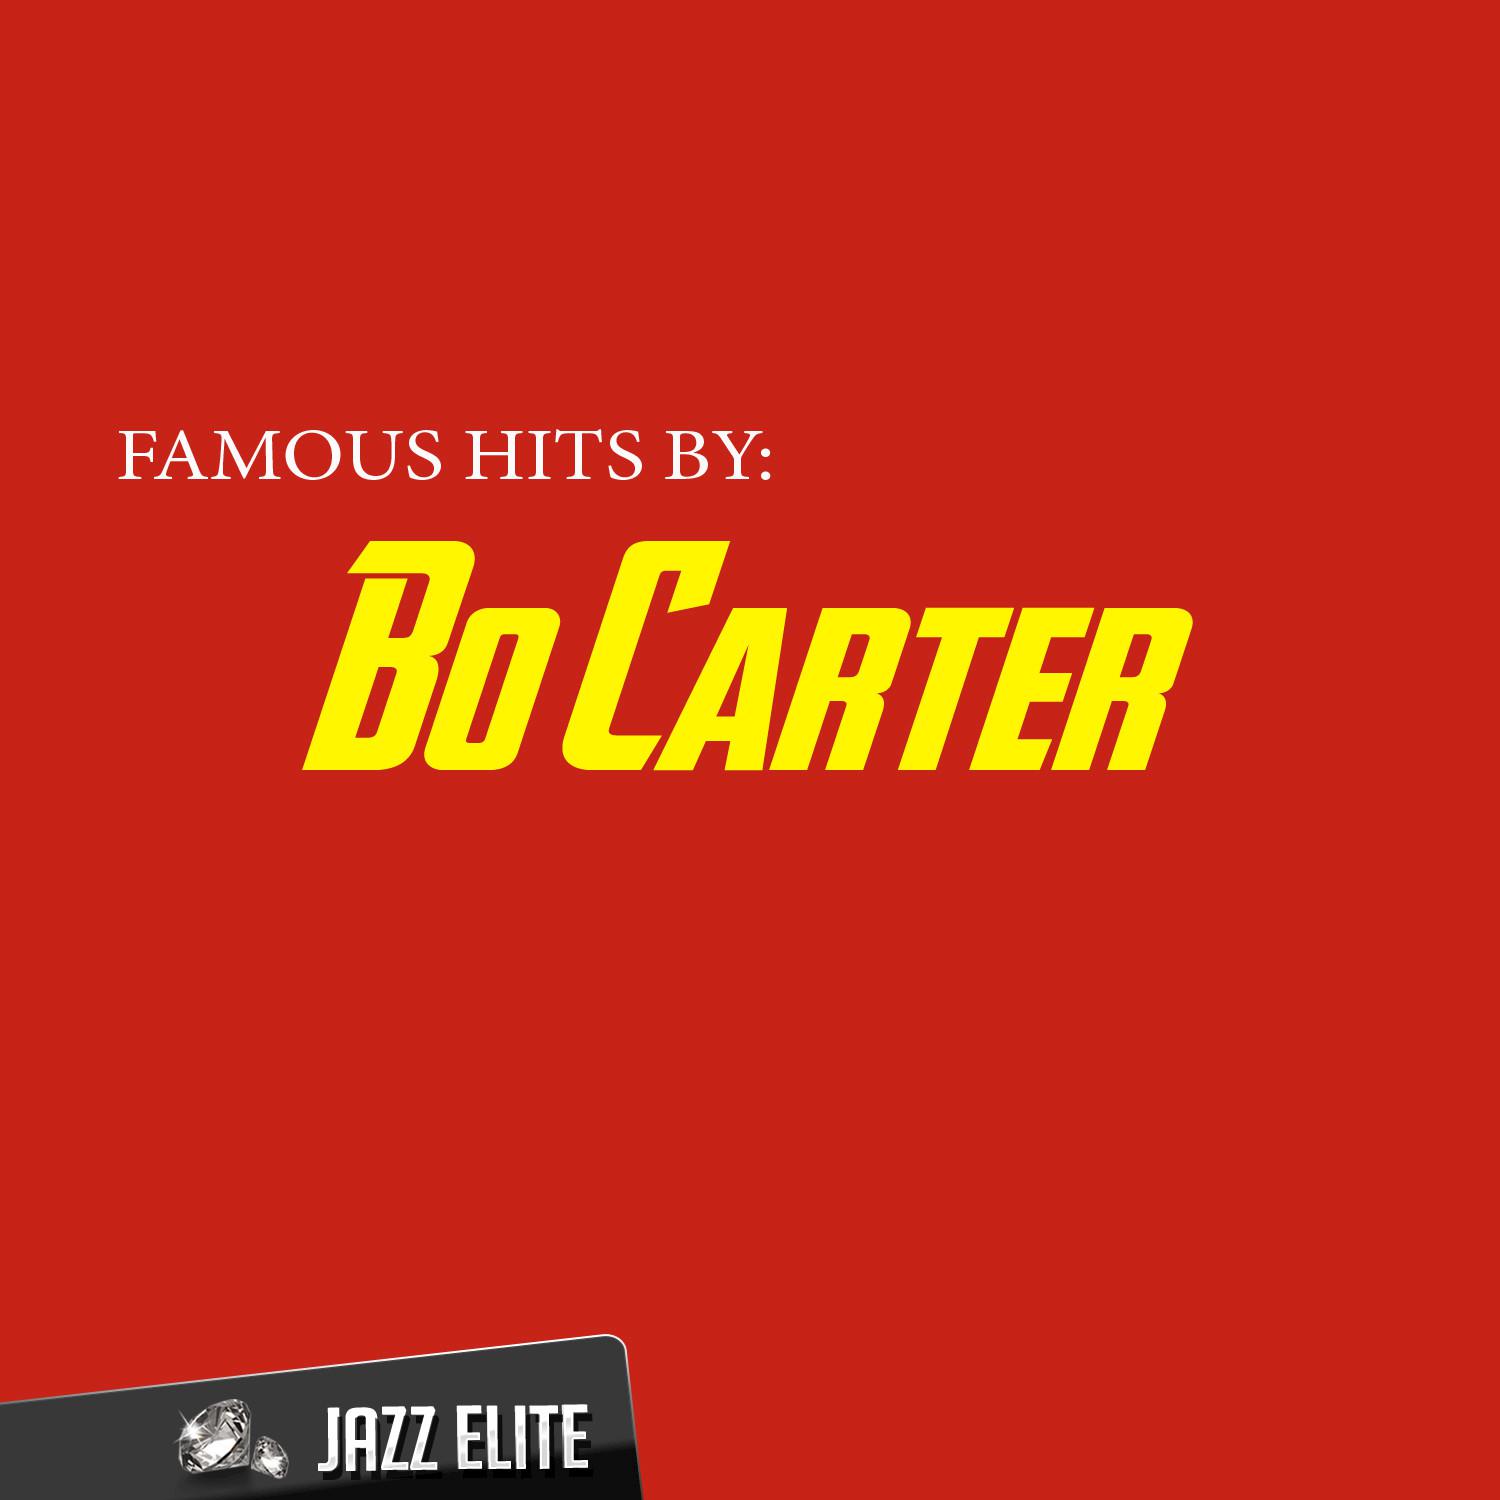 Bo Carter Special